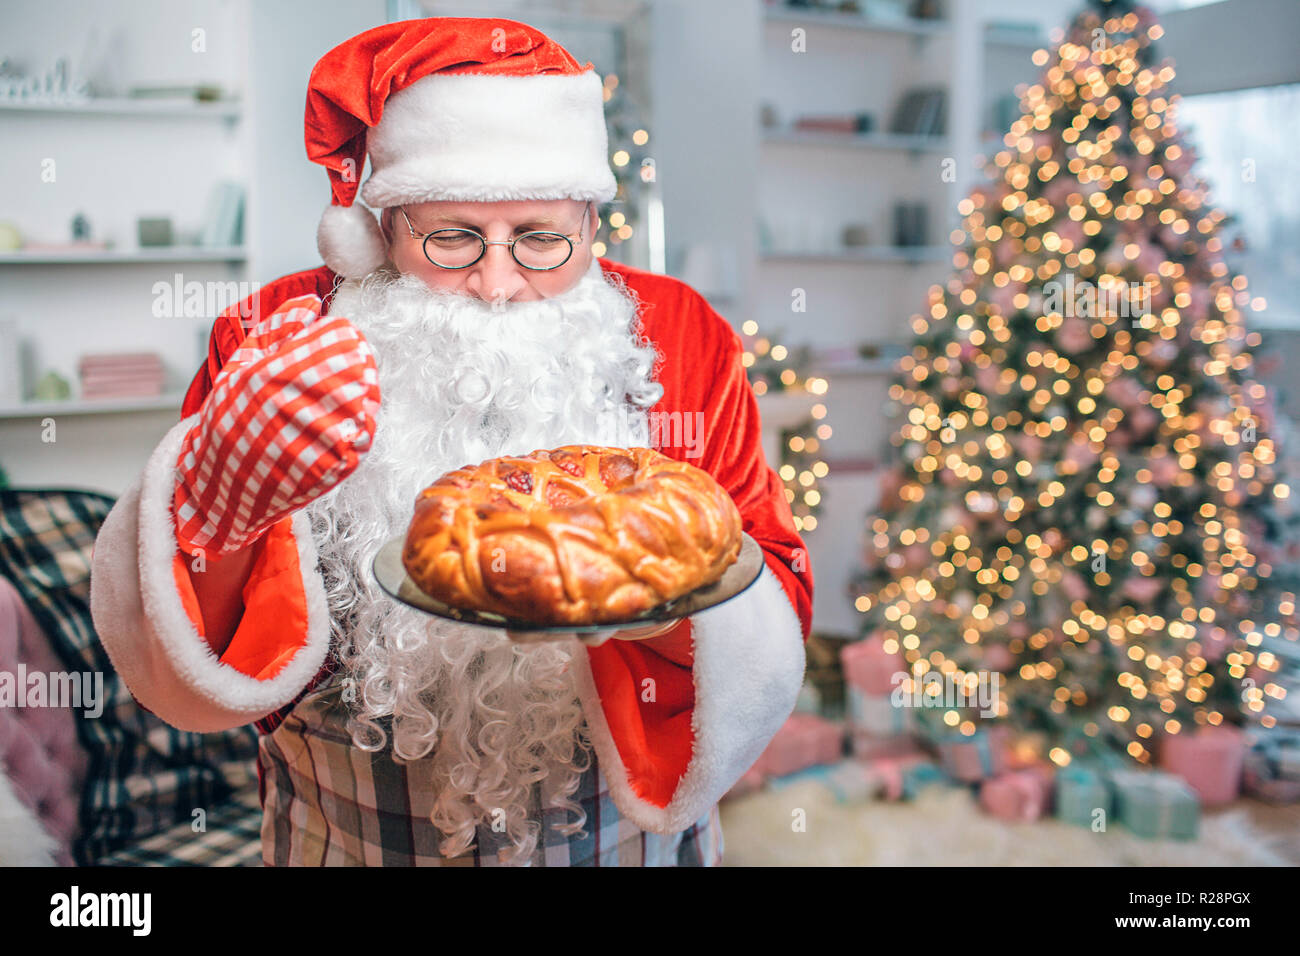 Frisch und lecker Torte ist in den Händen von Santa Claus. Er sieht und riecht. Es gibt Weihnachten Baum hinter ihm. Stockfoto